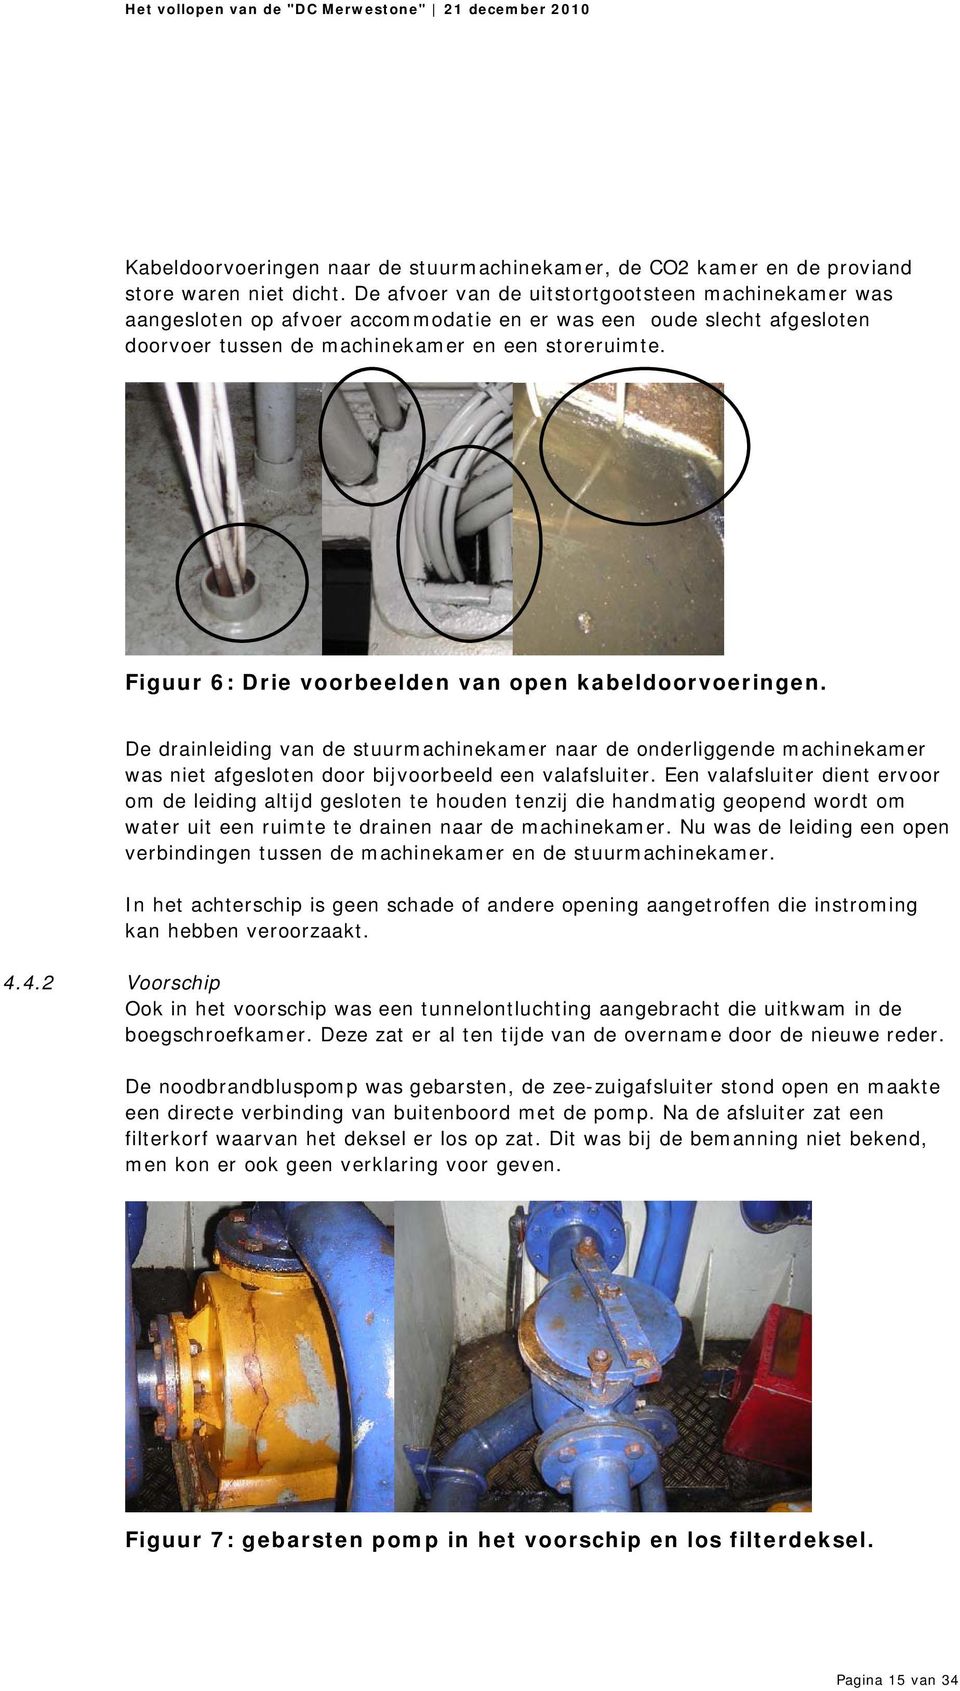 Figuur 6: Drie voorbeelden van open kabeldoorvoeringen. De drainleiding van de stuurmachinekamer naar de onderliggende machinekamer was niet afgesloten door bijvoorbeeld een valafsluiter.